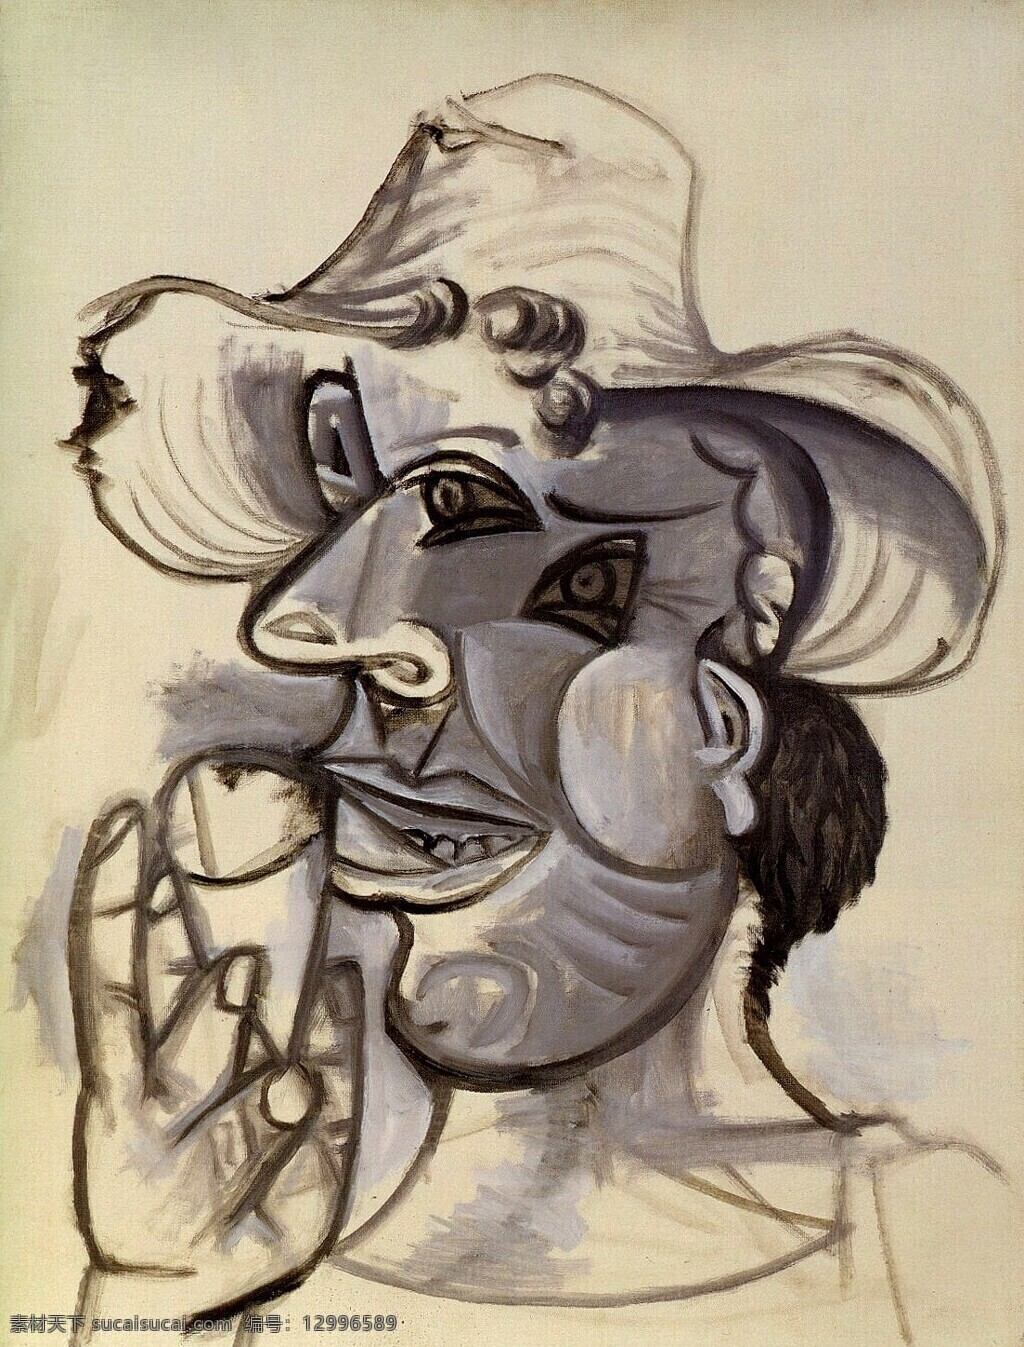 西班牙 画家 巴勃罗 毕加索 抽象 油画 人物 人体 装饰画 glace de cornet au homme 1938 家居装饰素材